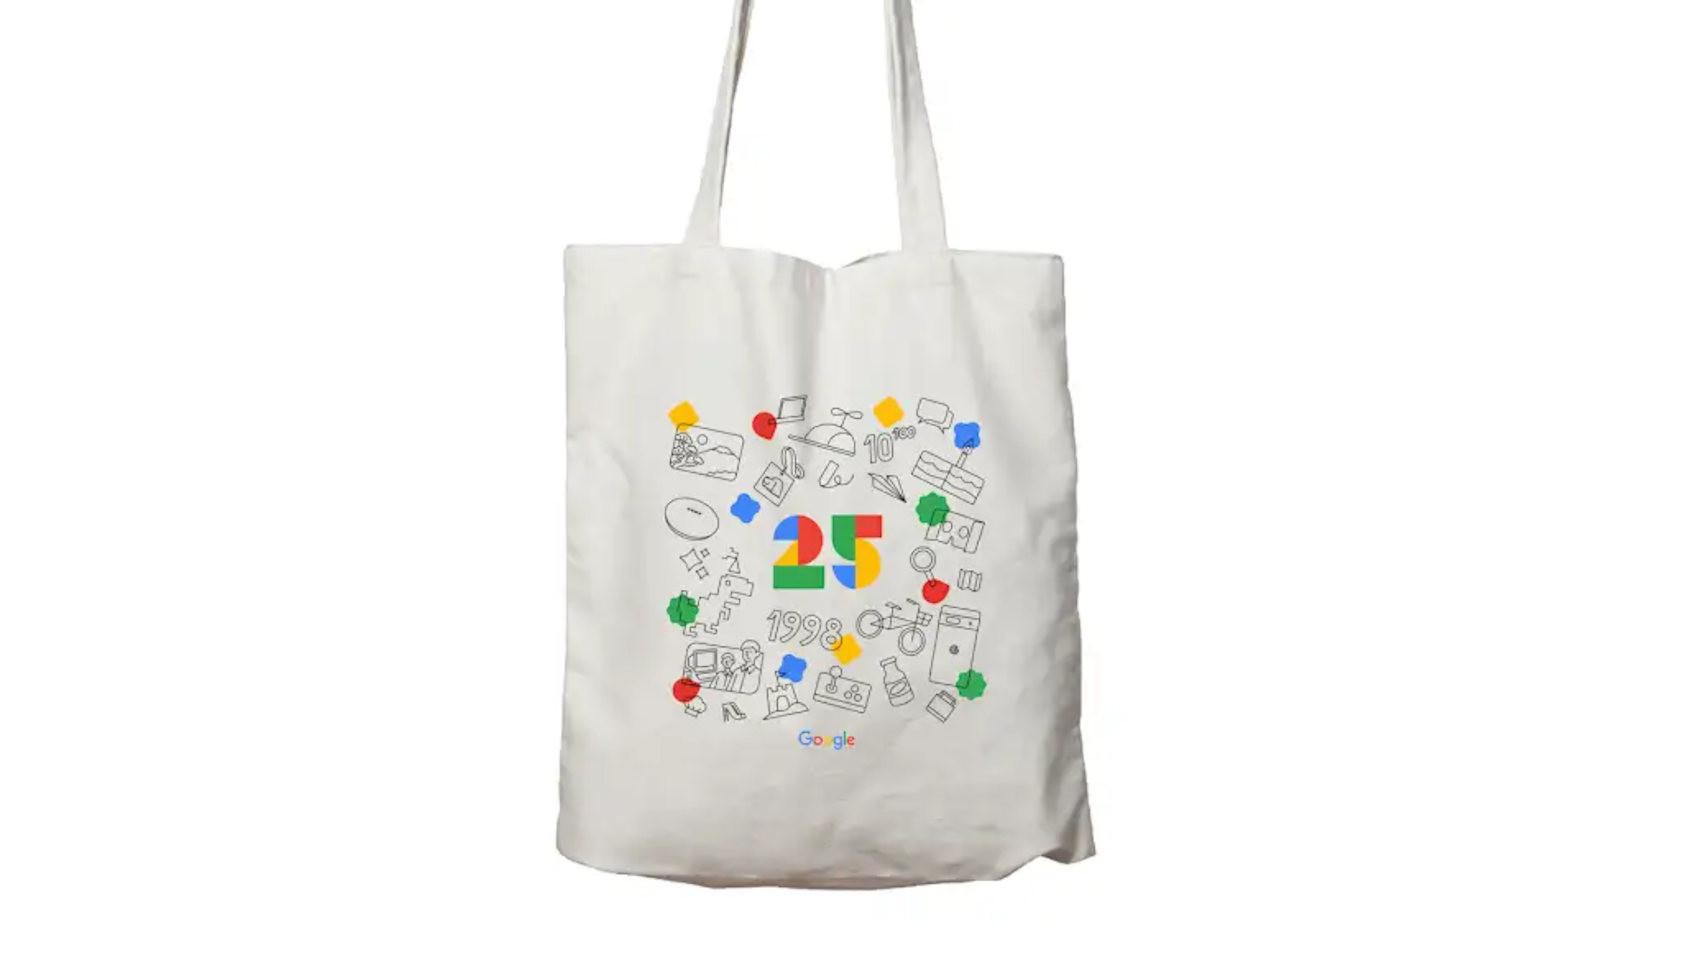 La bolsa con el diseño que celebra el 25º aniversario de Google